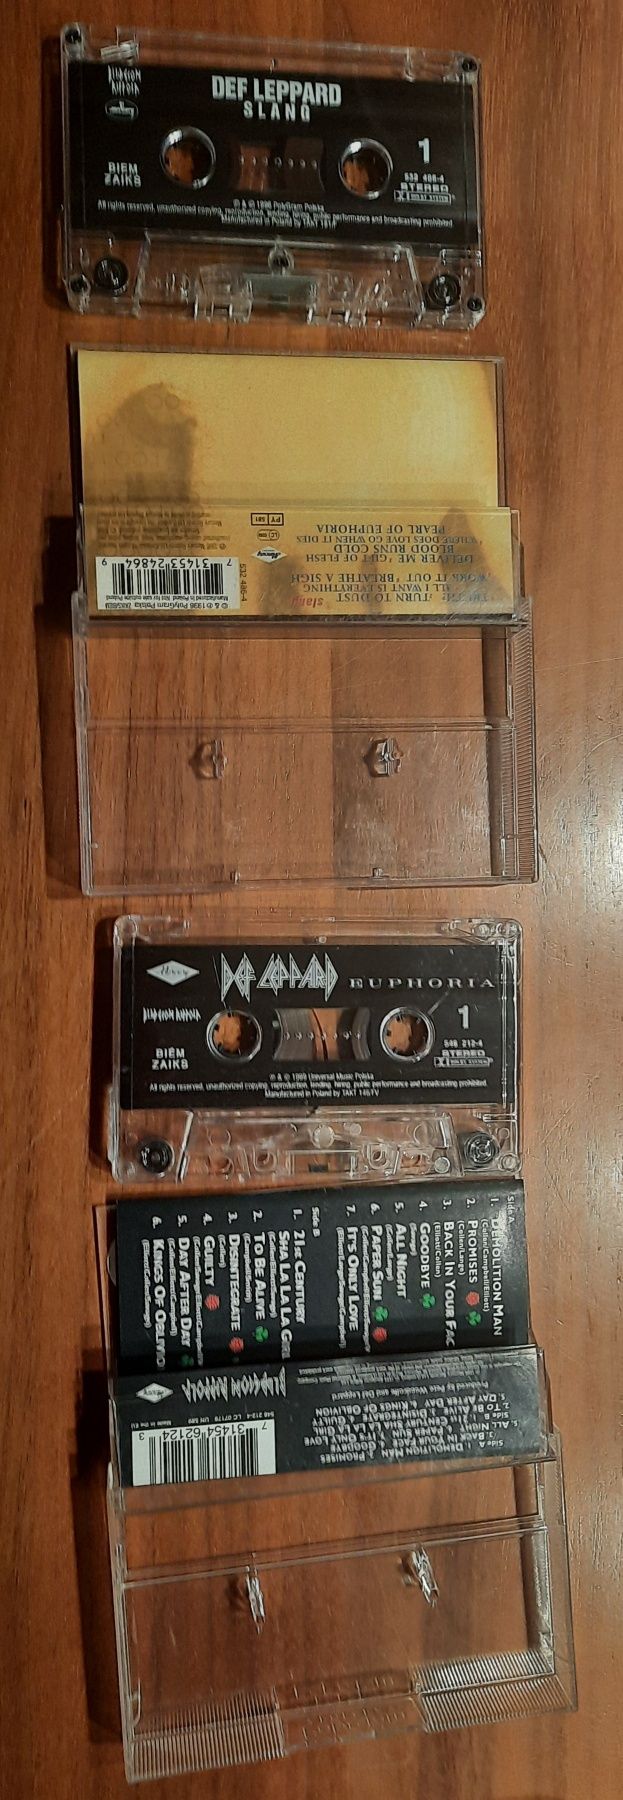 2 kasety Def Leppard